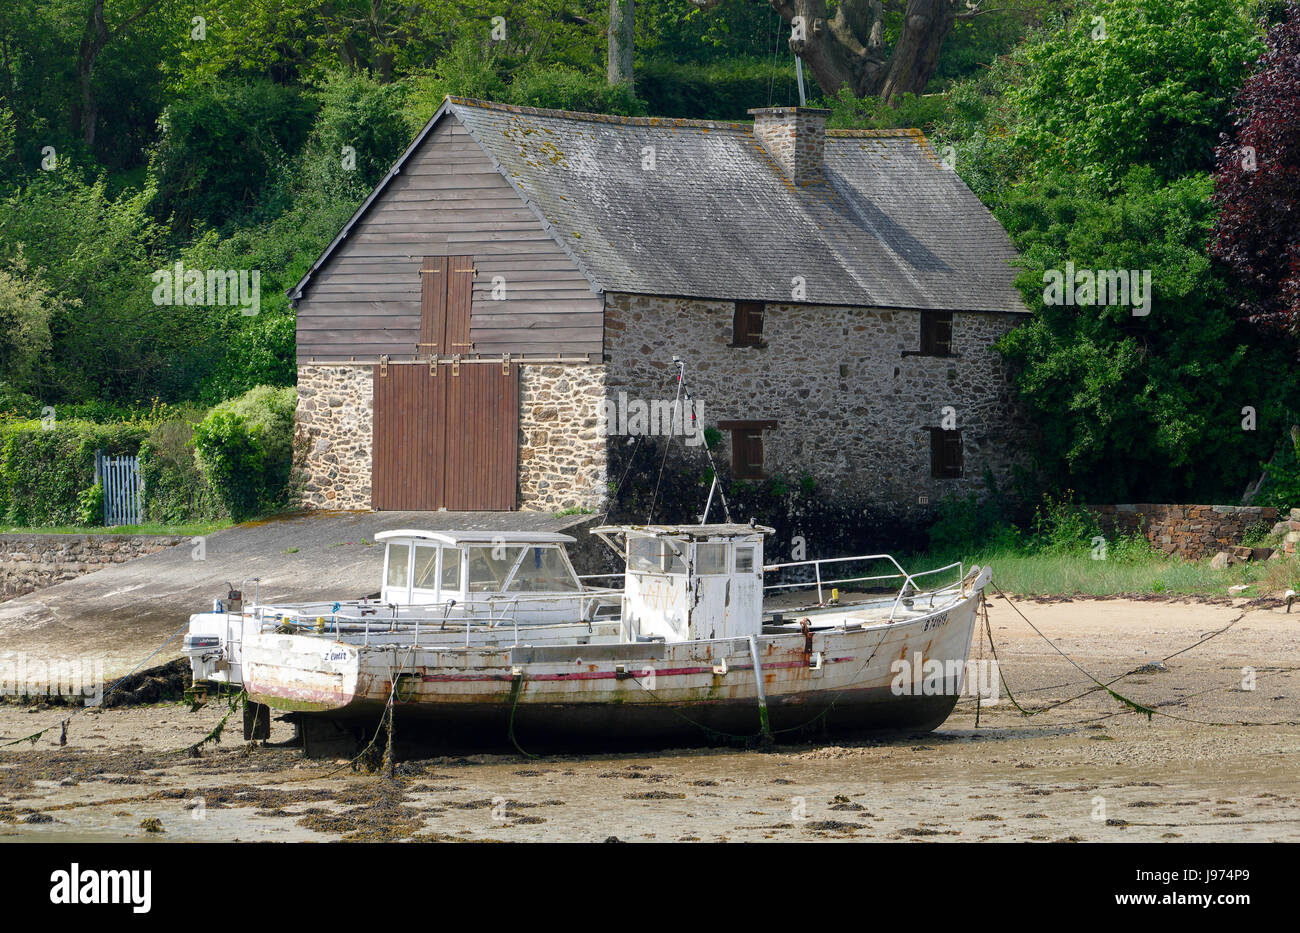 Bateaux échoués à marée basse sur la rive à Minihic-sur-Rance (Rance, l'Ille et Vilaine, Bretagne, France). Banque D'Images